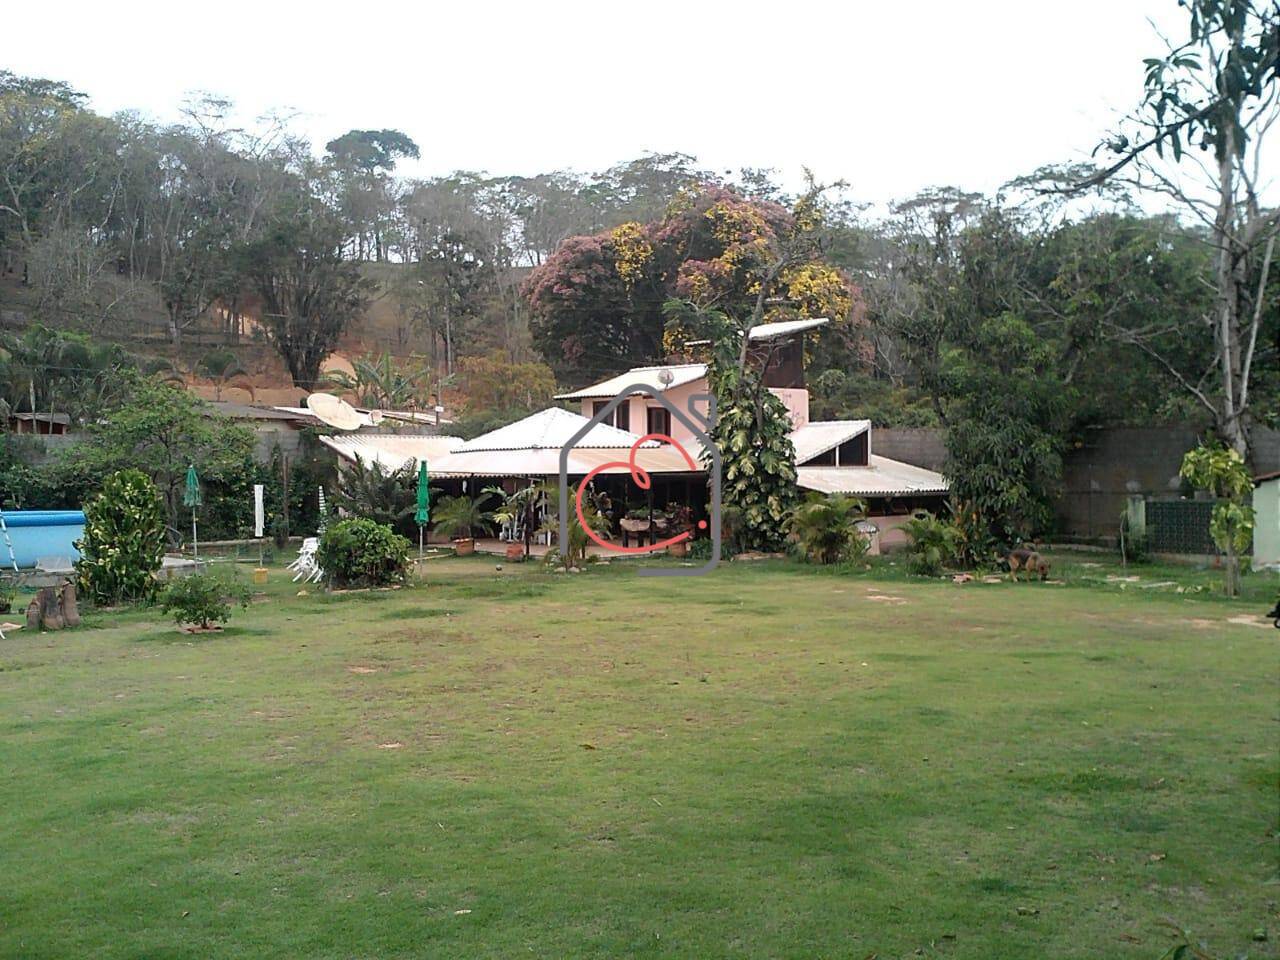 Casa Granja dos Cavaleiros, Macaé - RJ